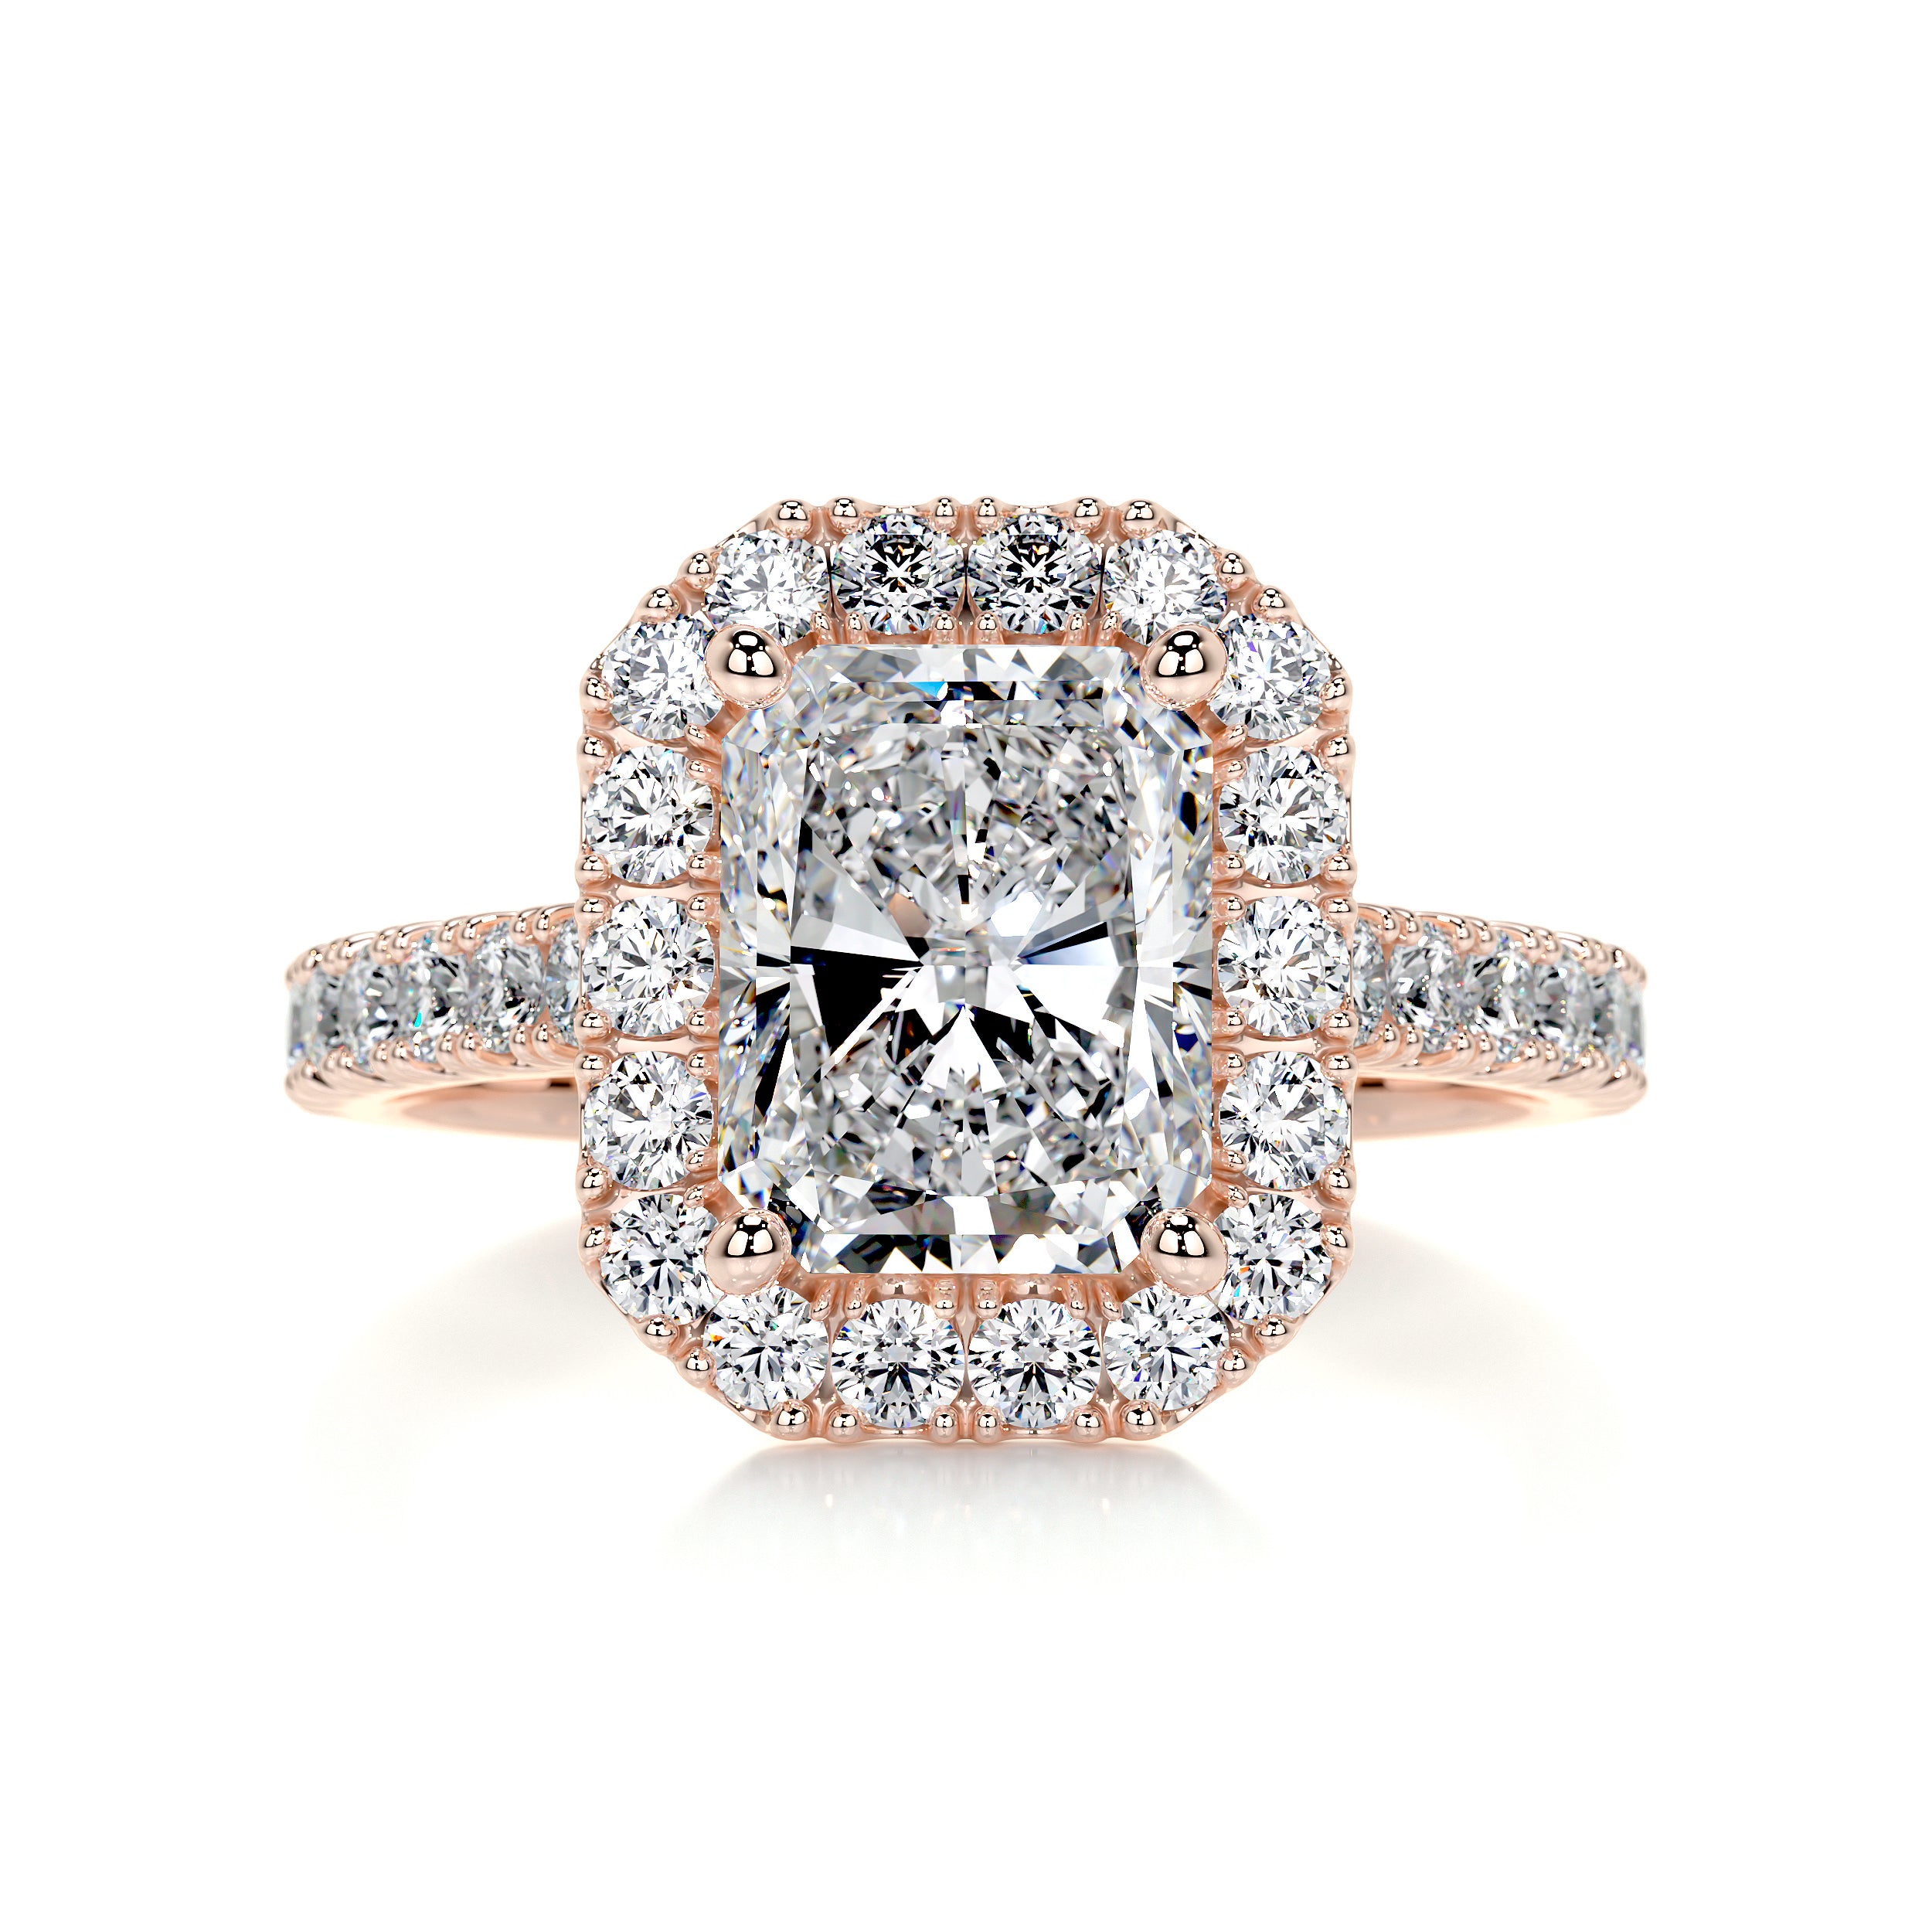 Andrea Moissanite & Diamonds Ring   (4.3 Carat) -14K Rose Gold